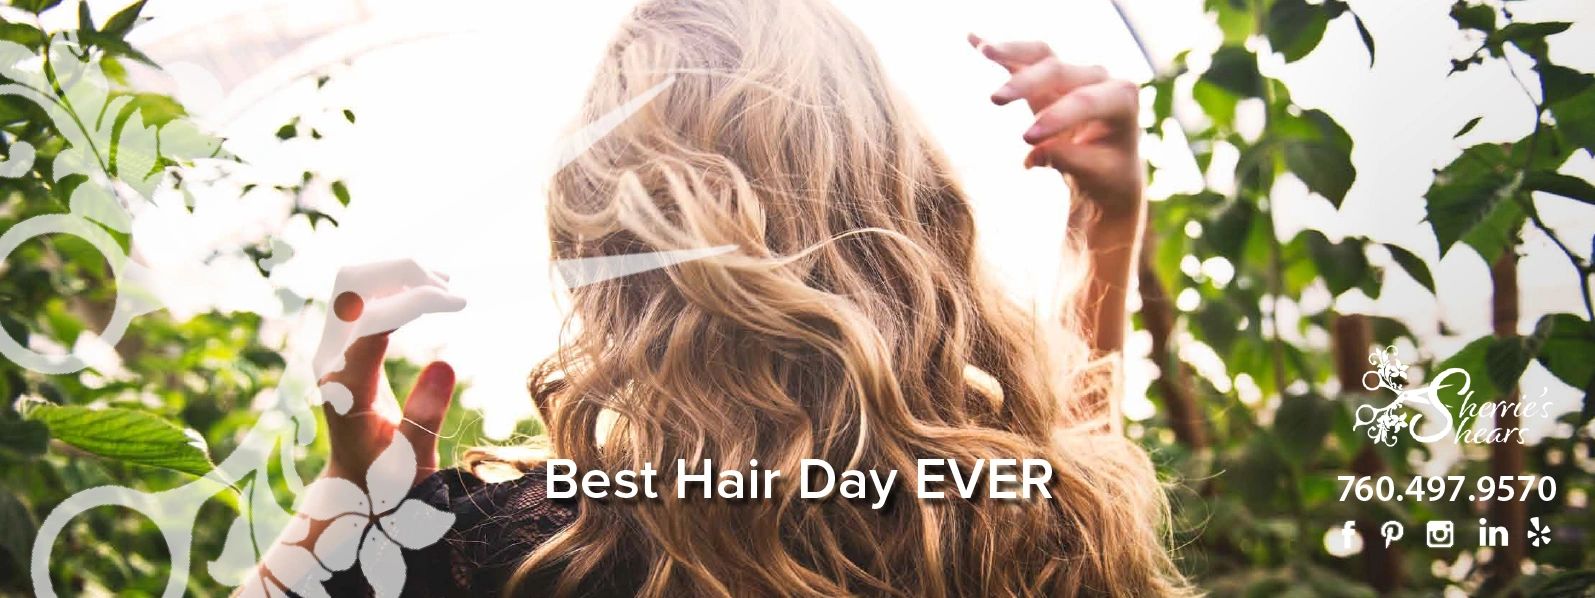 Sherries Shears, Sherrie Ward, Best Hair Color, Best Hair Cut, San Diego, Olaplex Hair Treatment